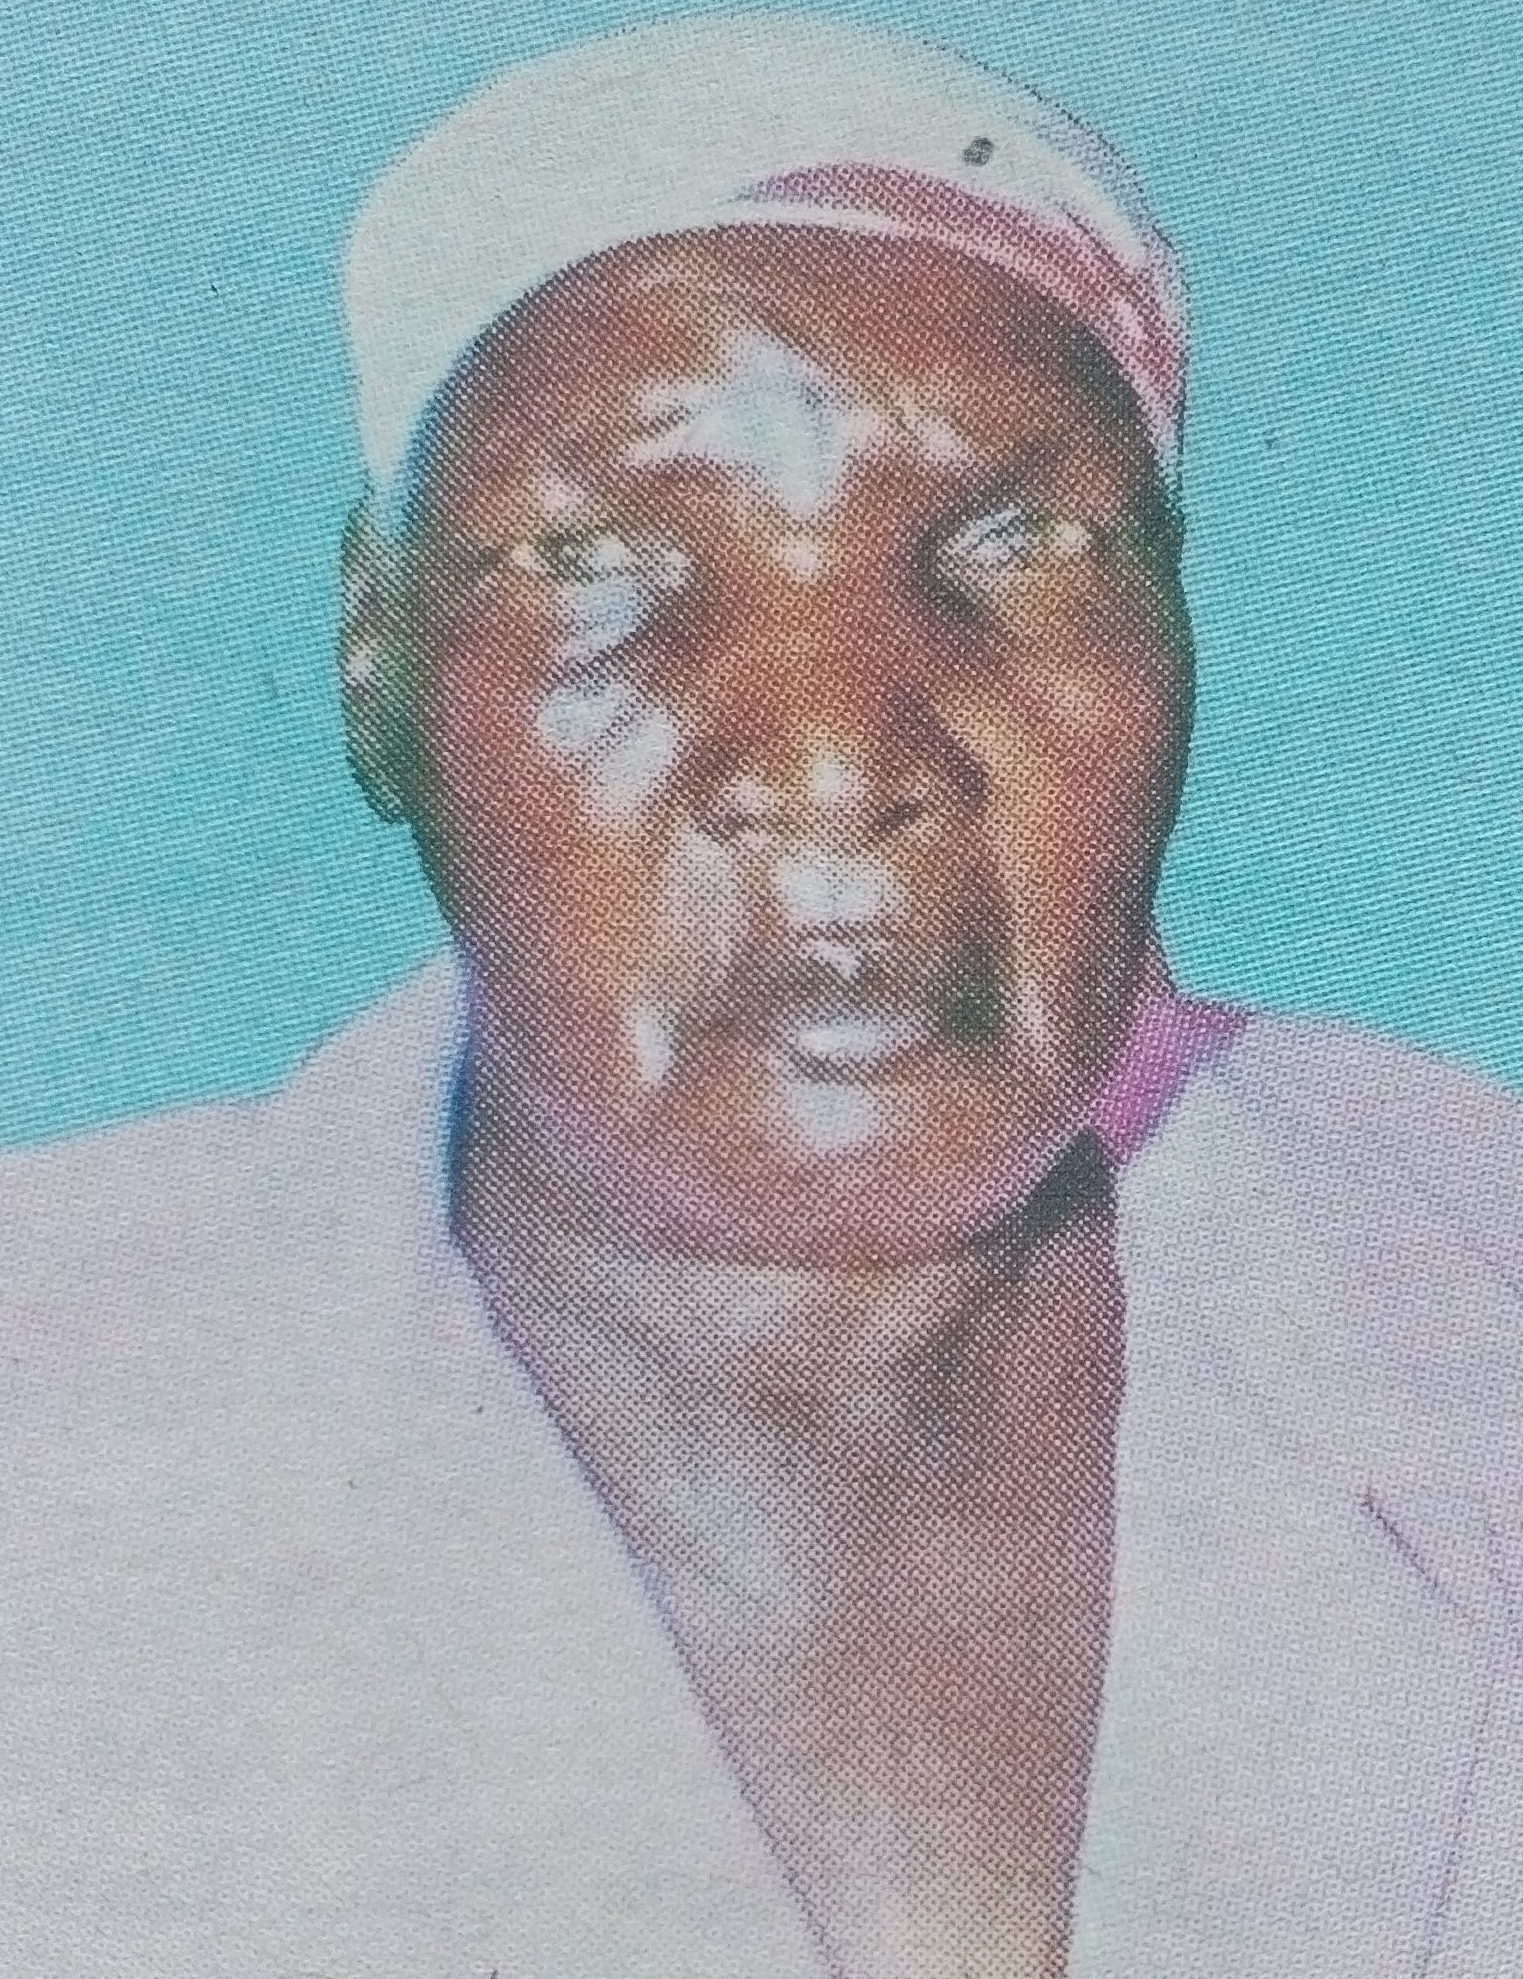 Obituary Image of Phoebe Musimbi Busisa